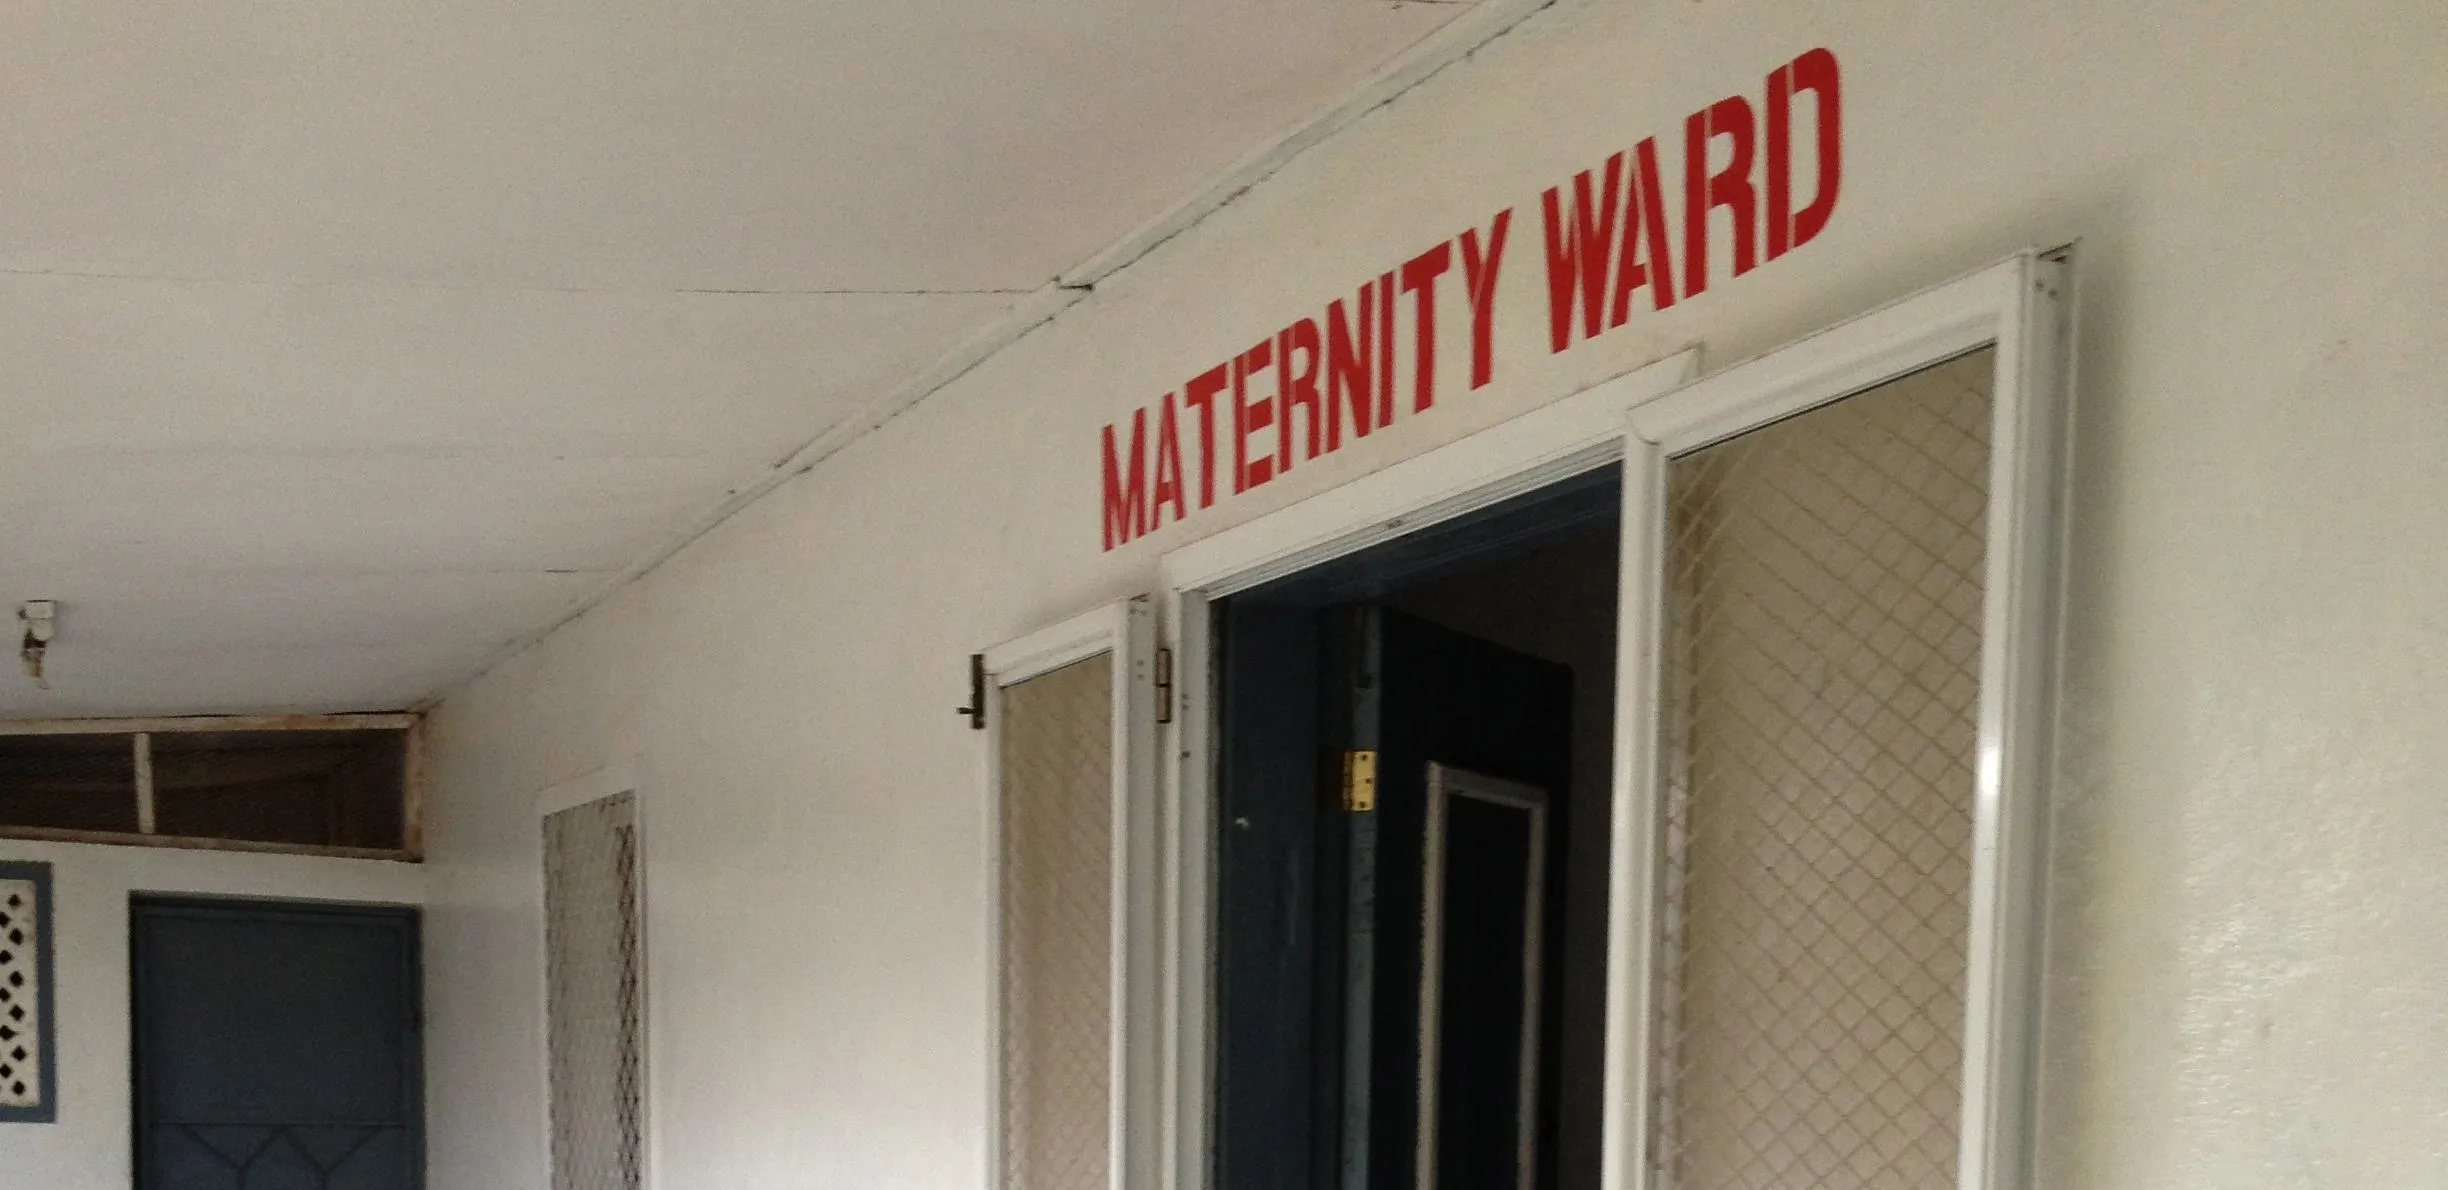 Somaliland-Maternity-Ward